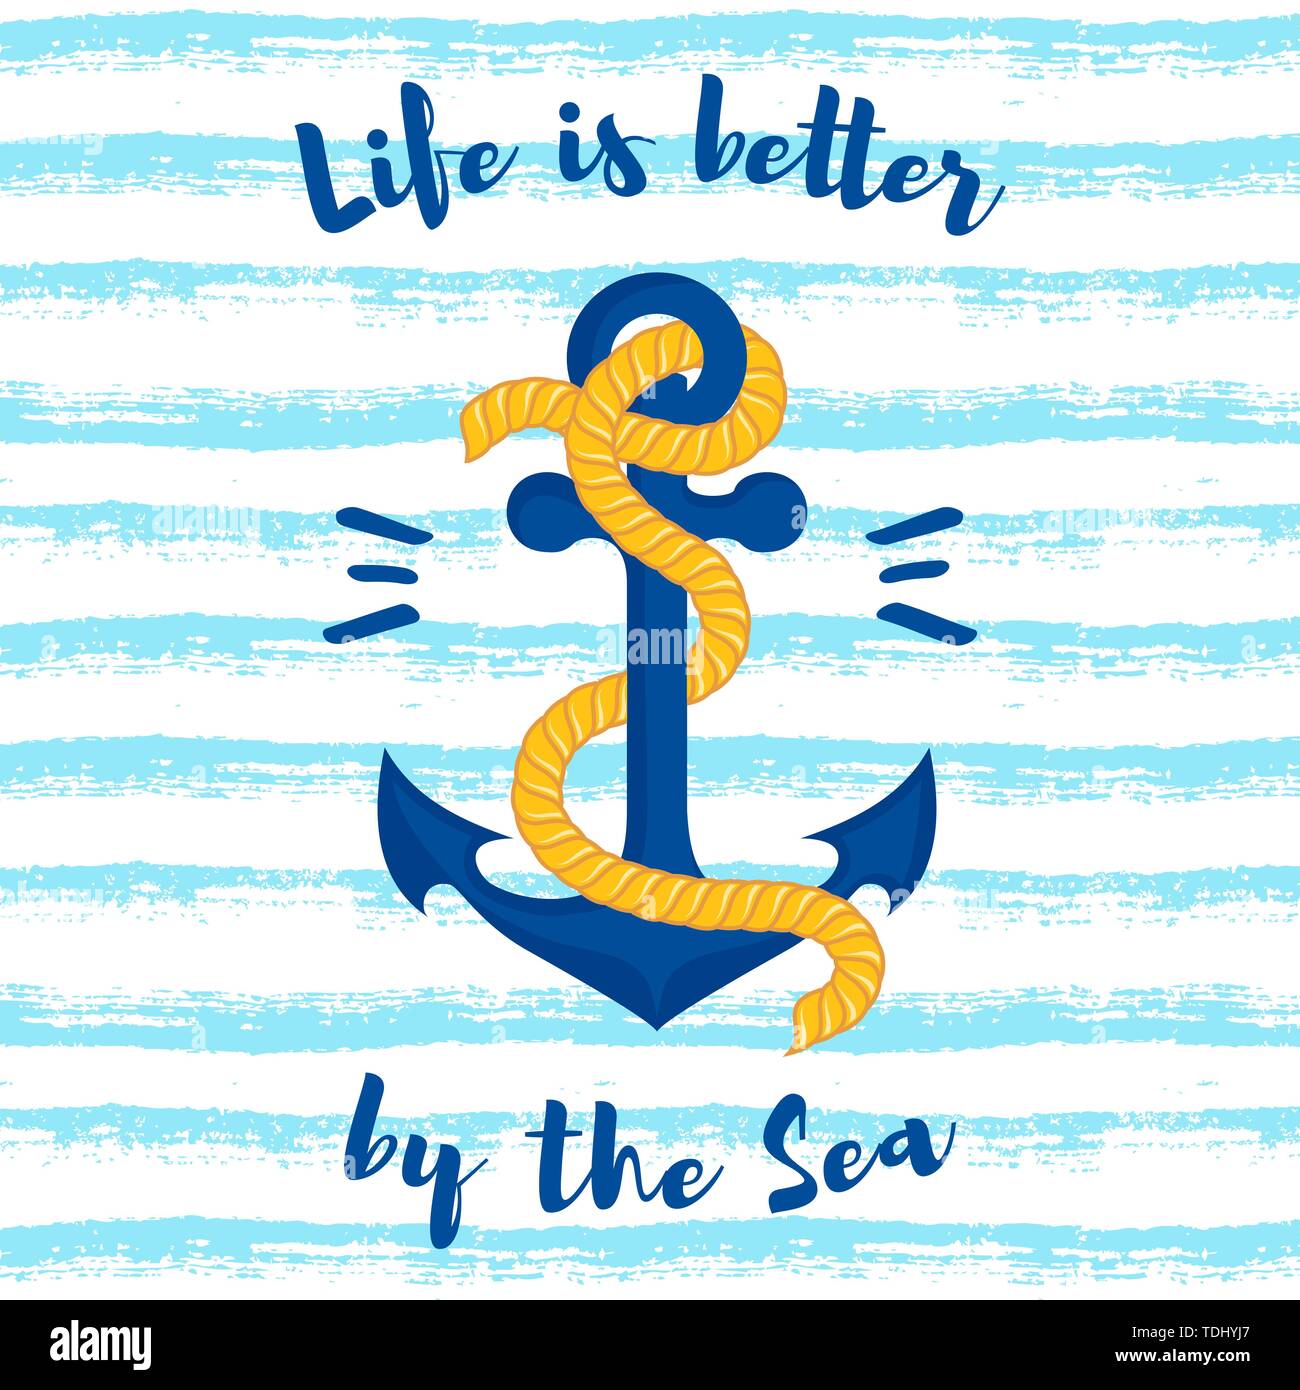 Illustrazione Vettoriale con il dispositivo di ancoraggio su uno sfondo a strisce. La vita è migliore dal mare - slogan. Illustrazione Vettoriale